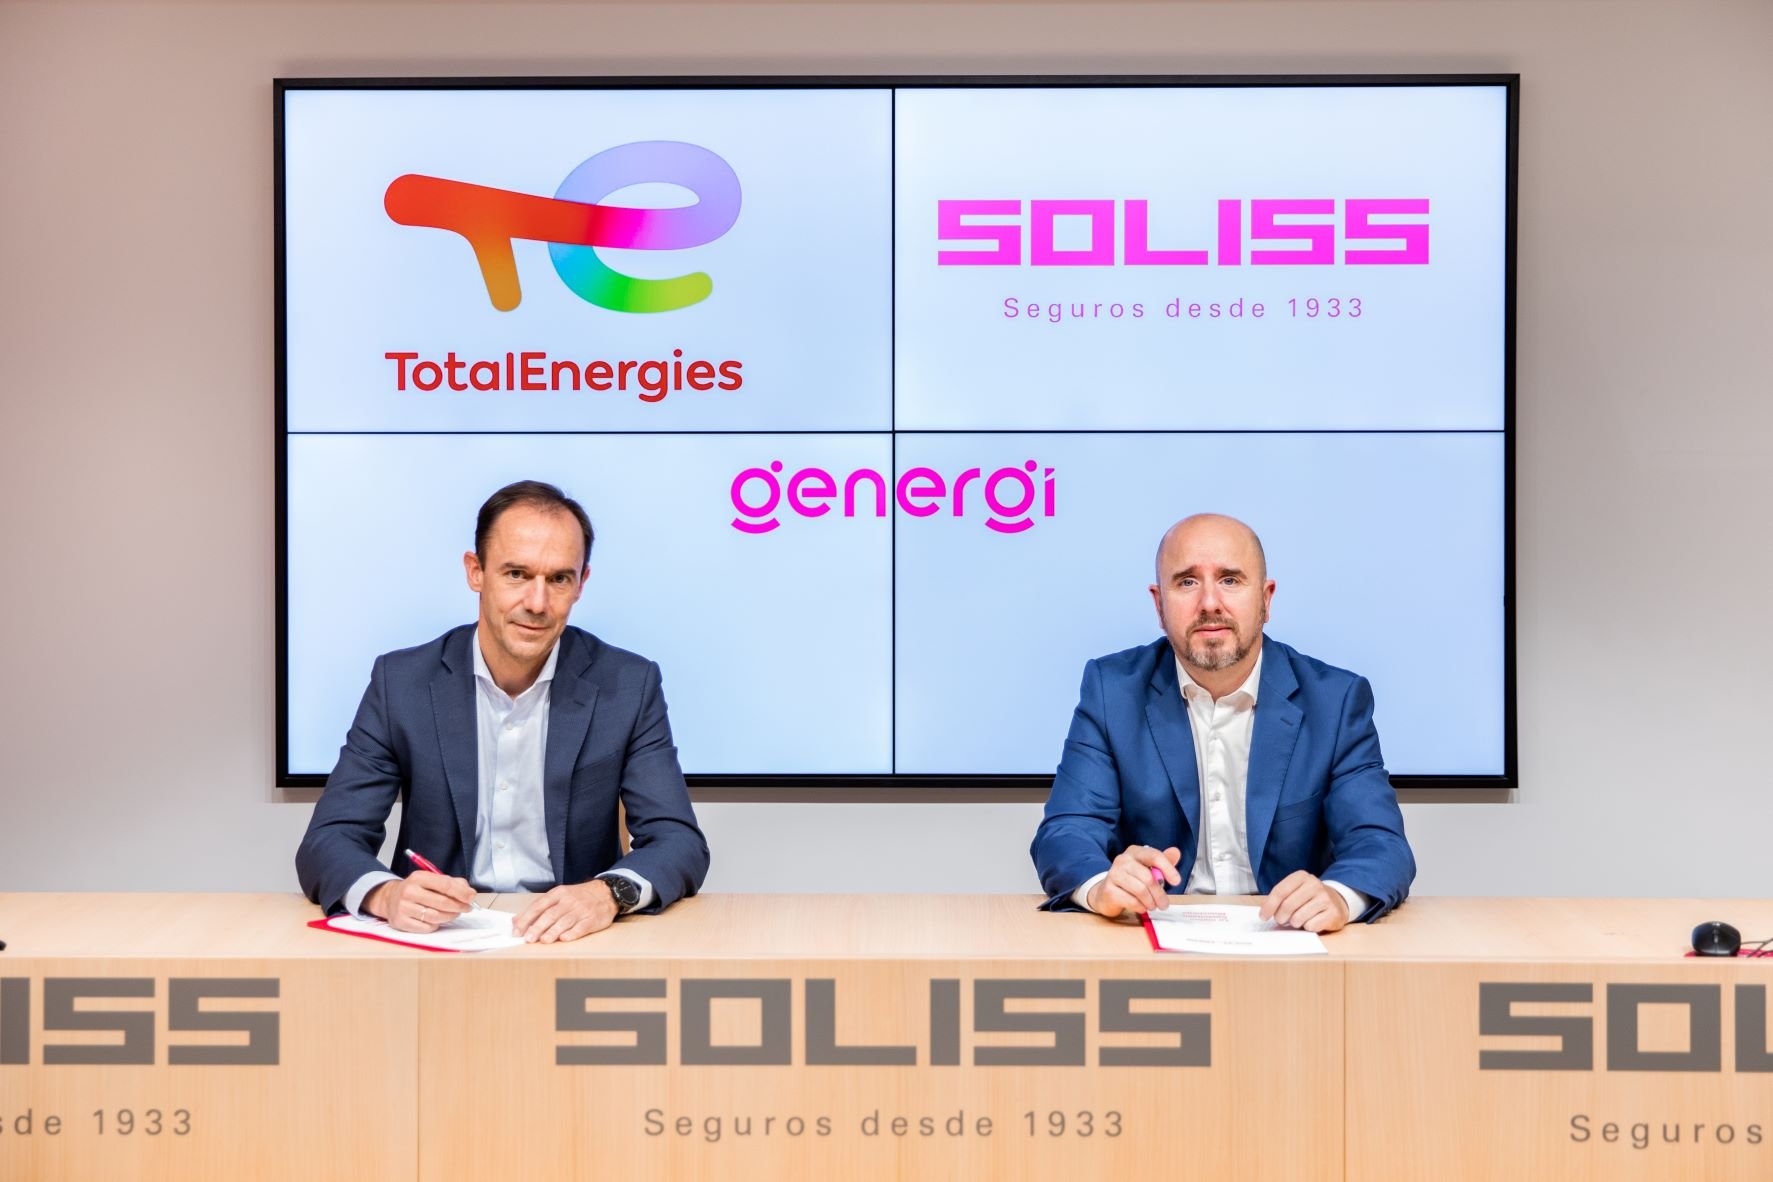 Javier Vázquez, director de Marketing y Ventas B2C de TotalEnergies Electricidad y Gas y Pablo Araujo, Director de Genergi, empresa participada de Grupo Soliss, a la derecha.